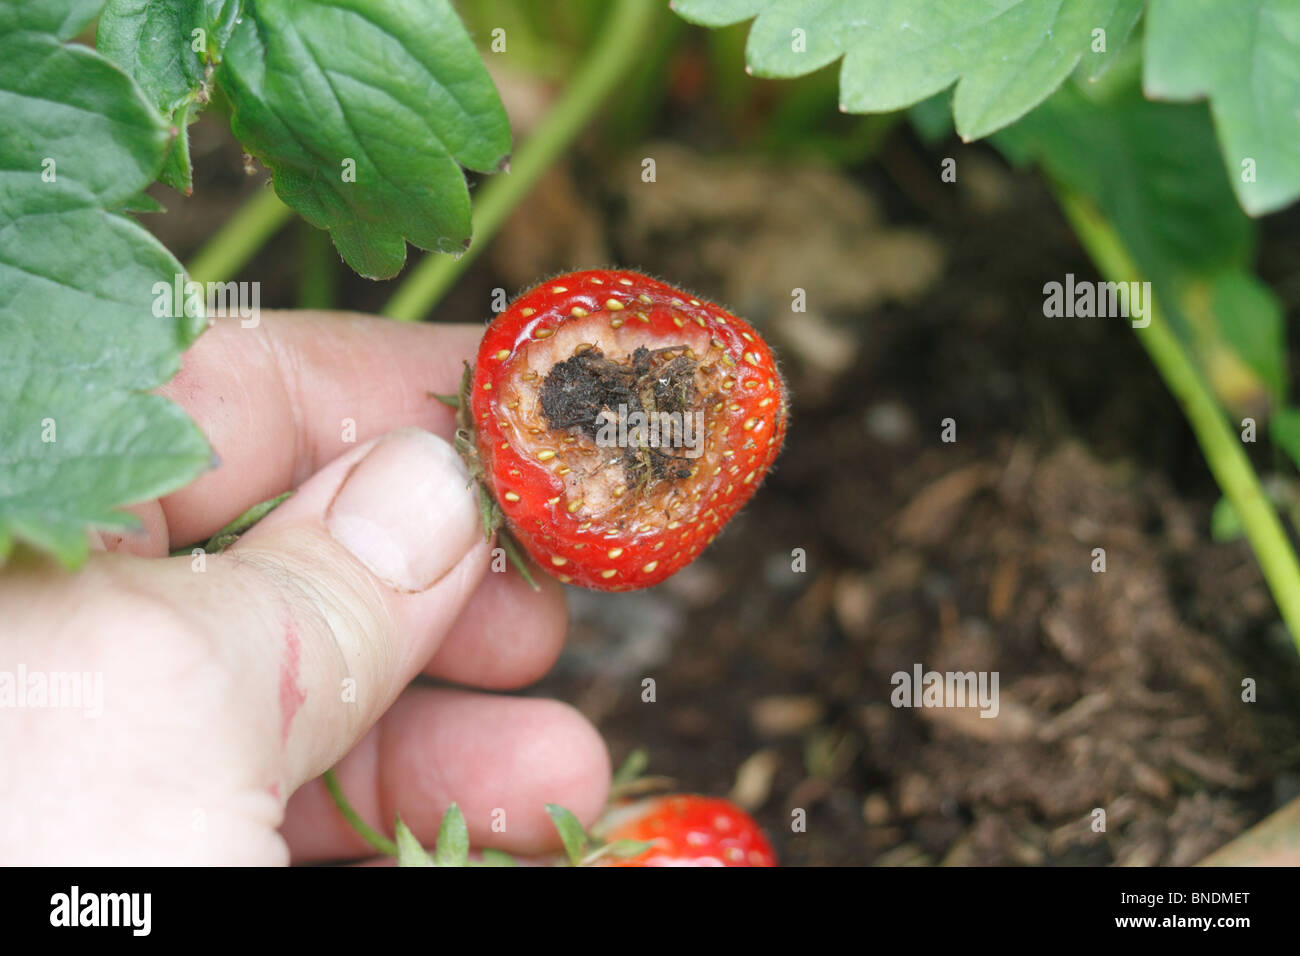 Fechten Sie Schäden am Topf gewachsen Erdbeeren Fragaria Ananassa - Rhapsody.The Obst auf der Oberfläche des Bodens ermöglicht Zugriff auf Schnecken, Derocereas Reticulatum gelegen hat. Stockfoto